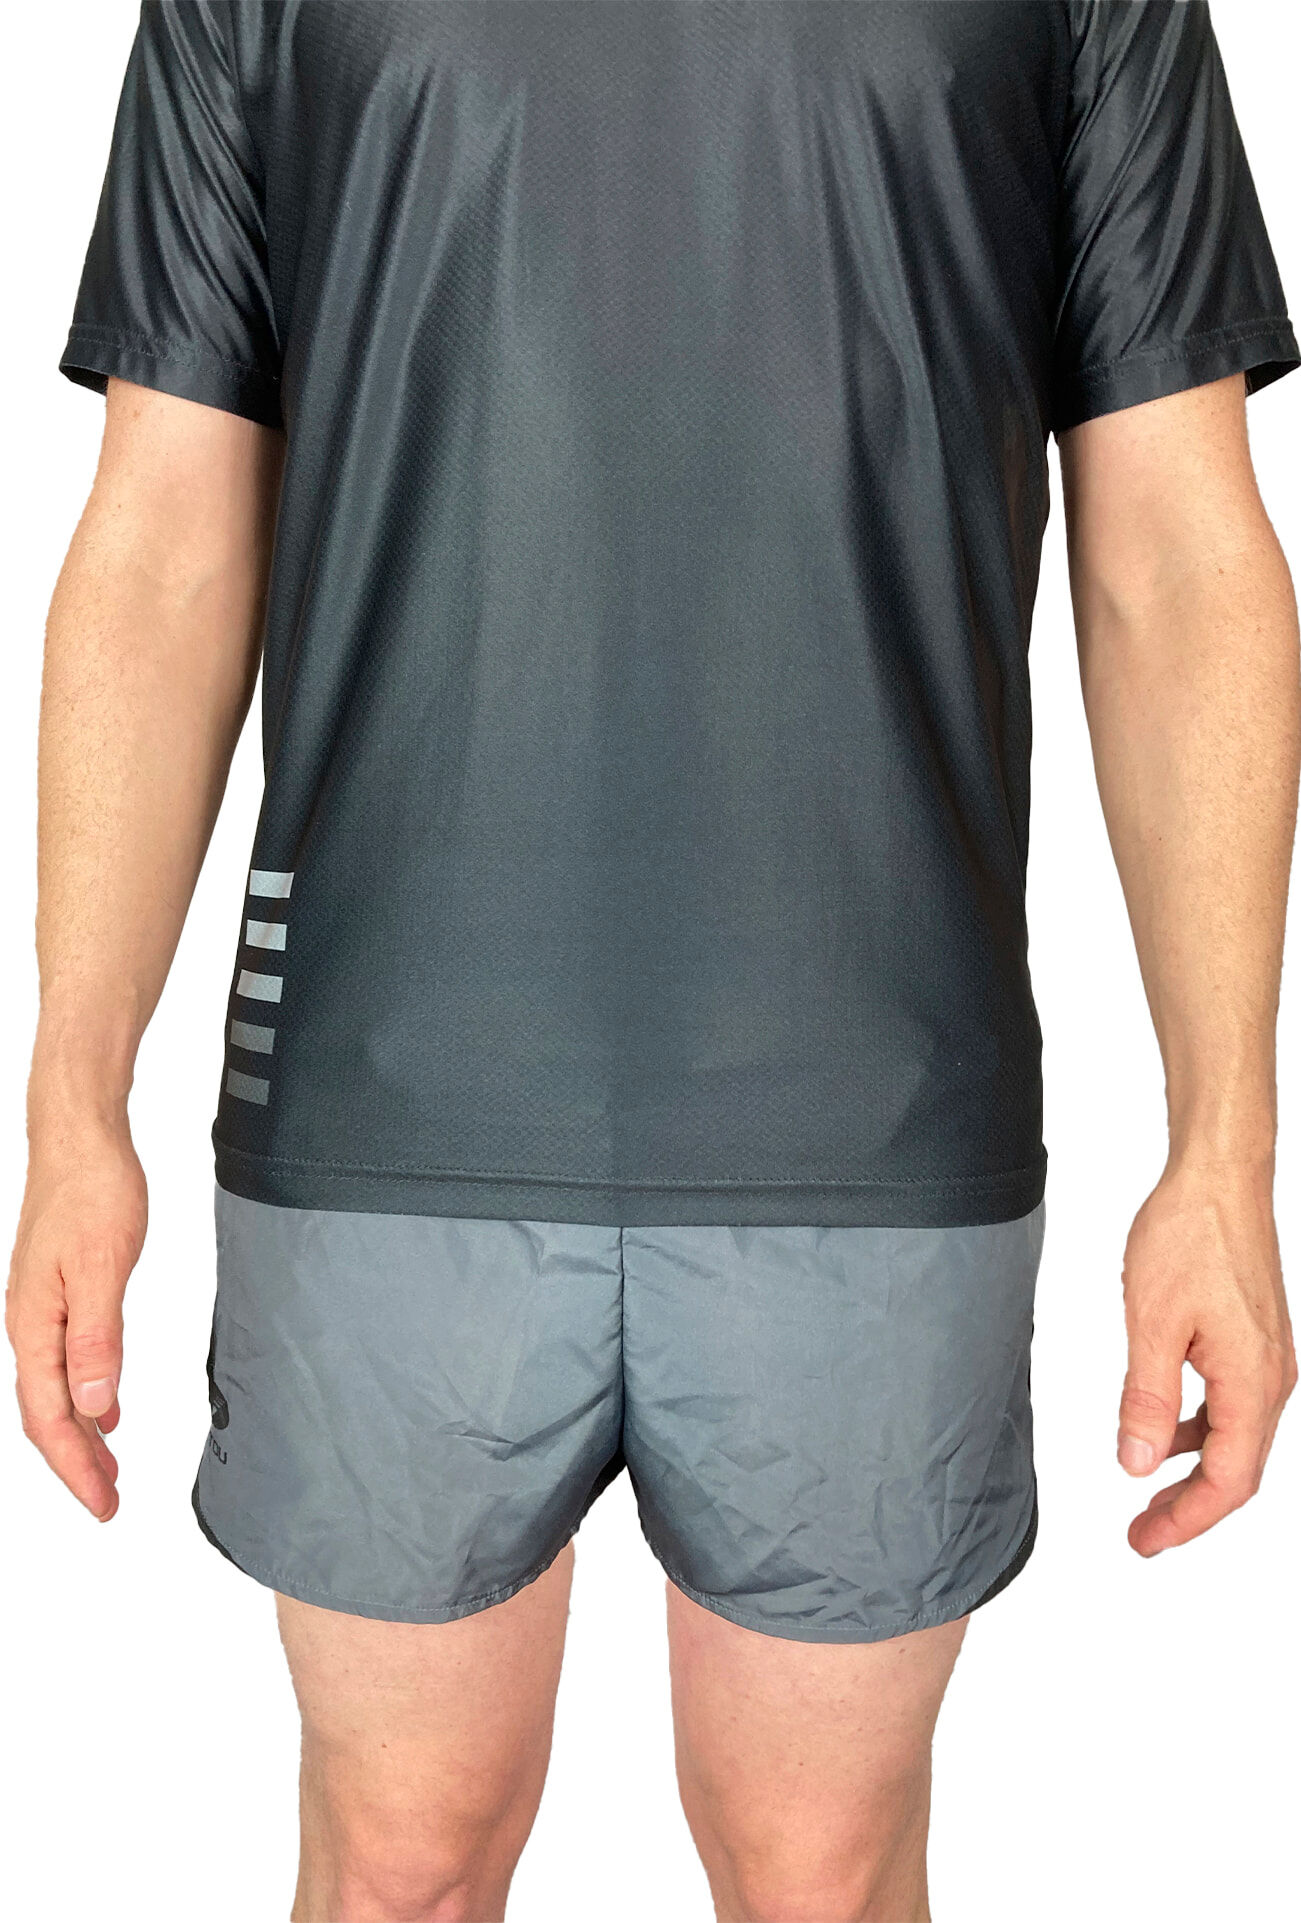 _0009_Grey shorts front